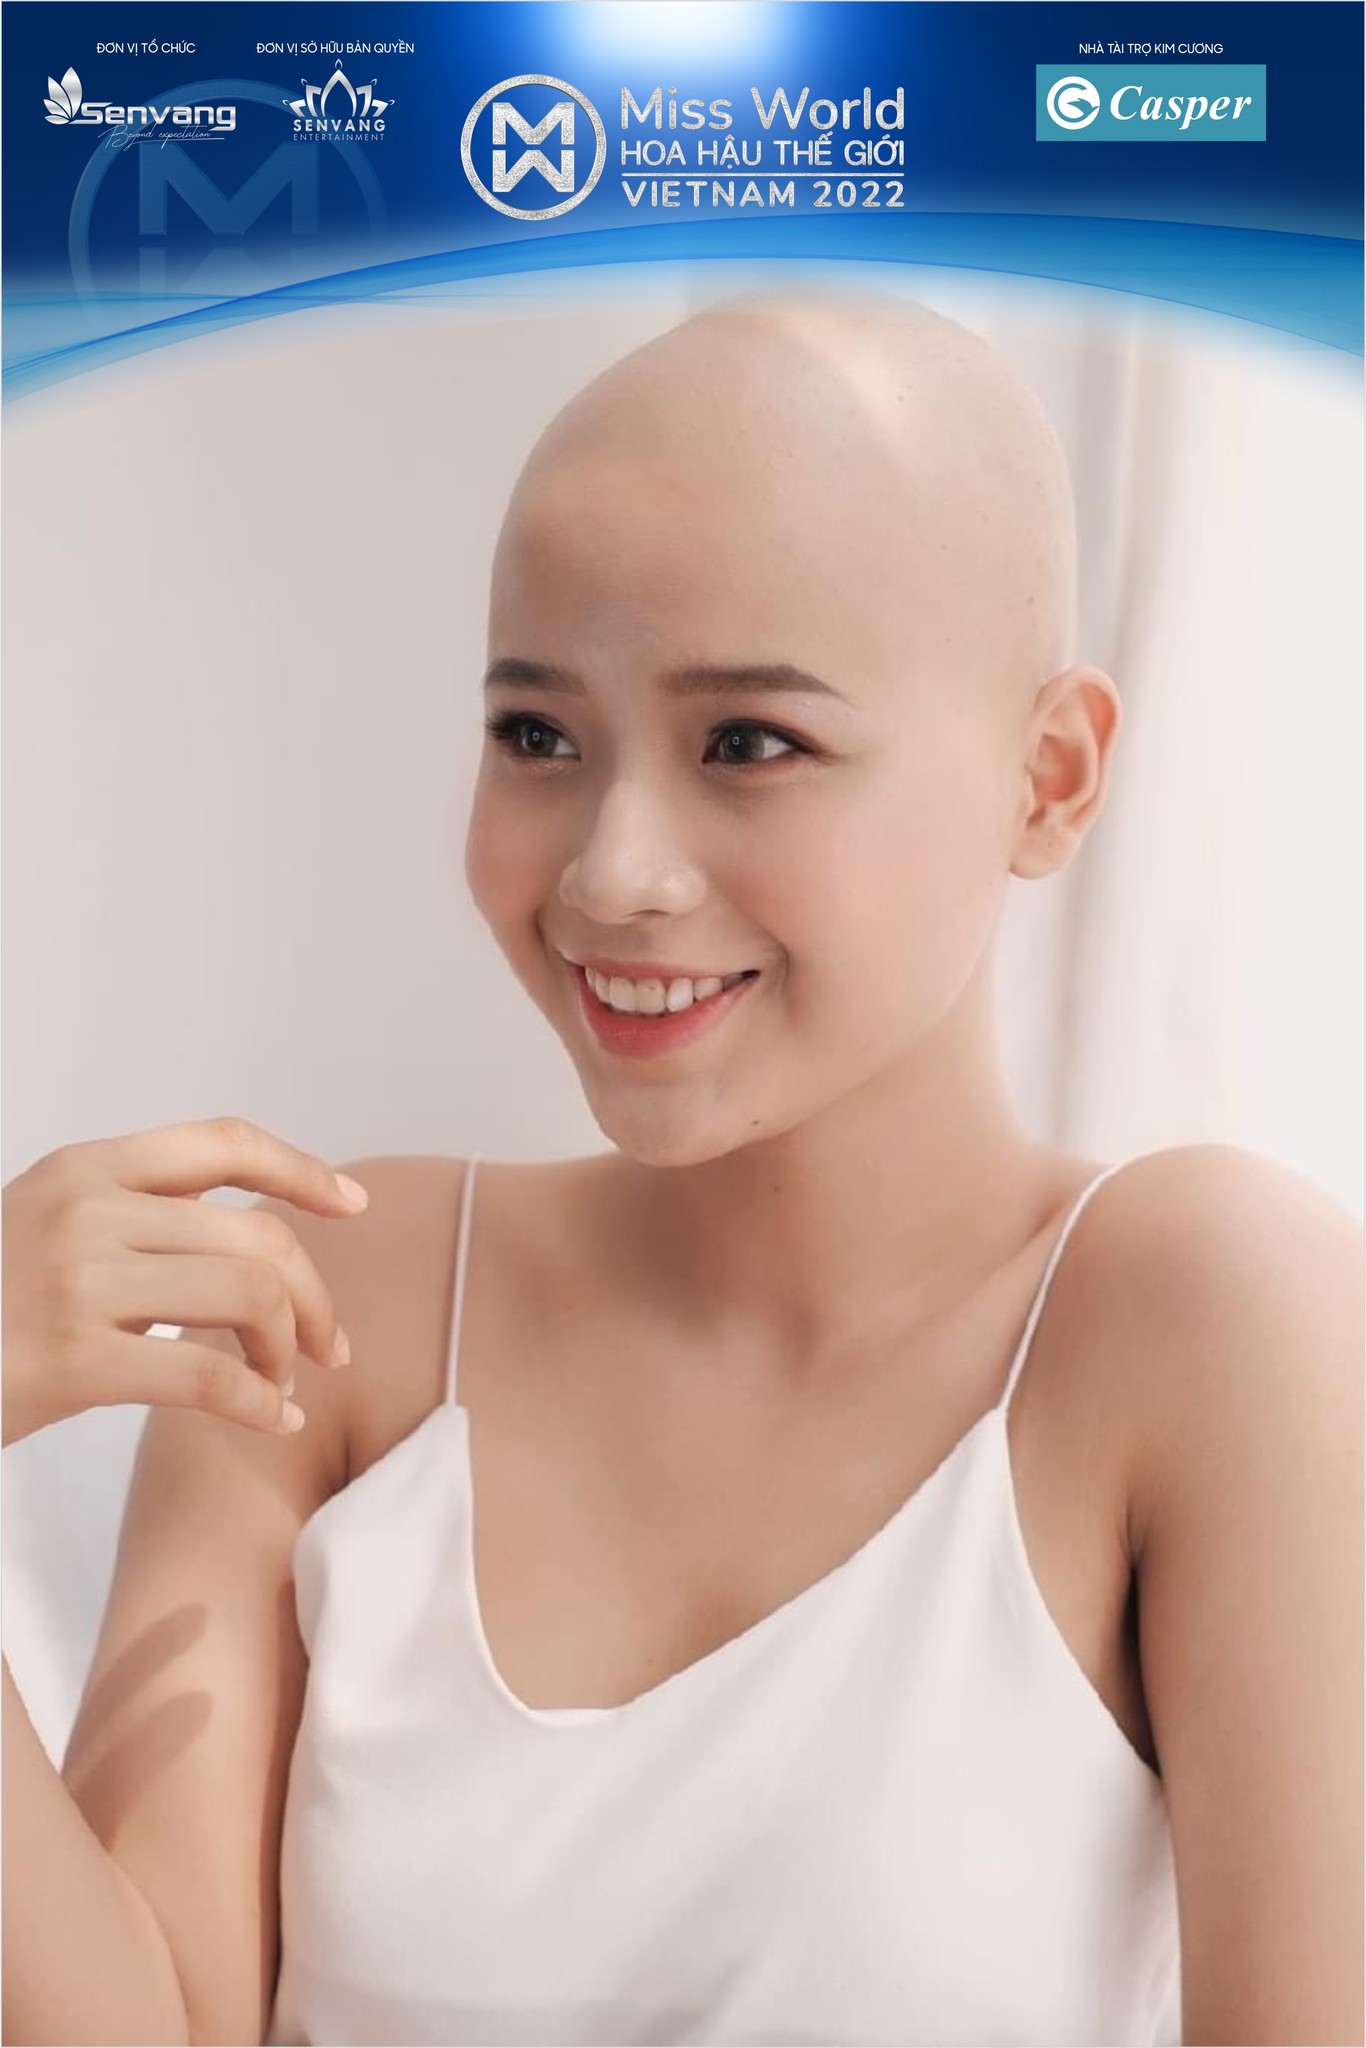 Nữ sinh chiến thắng ung thư tham gia Miss World Vietnam khiến cư dân mạng xôn xao